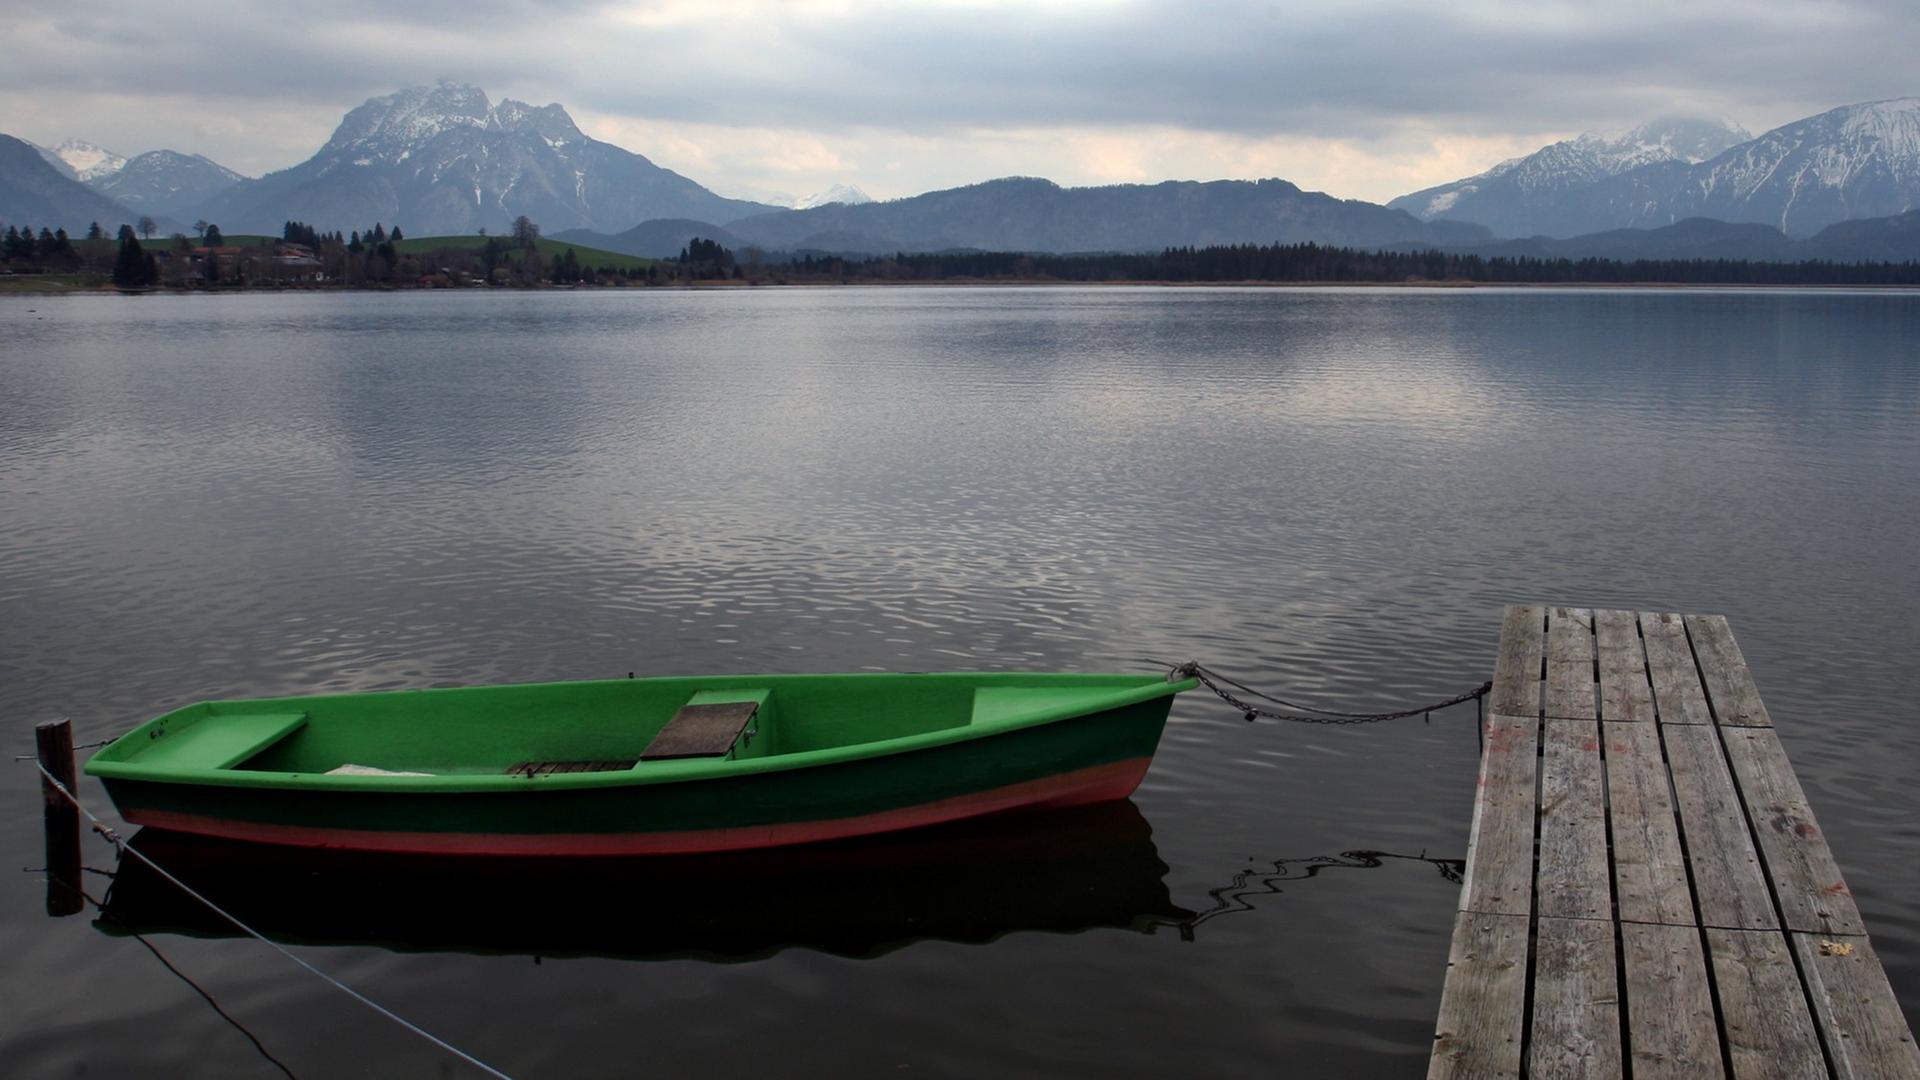 Wolkenverhangen ist es über einem See auf dem ein Holzboot an einem Steg liegt.